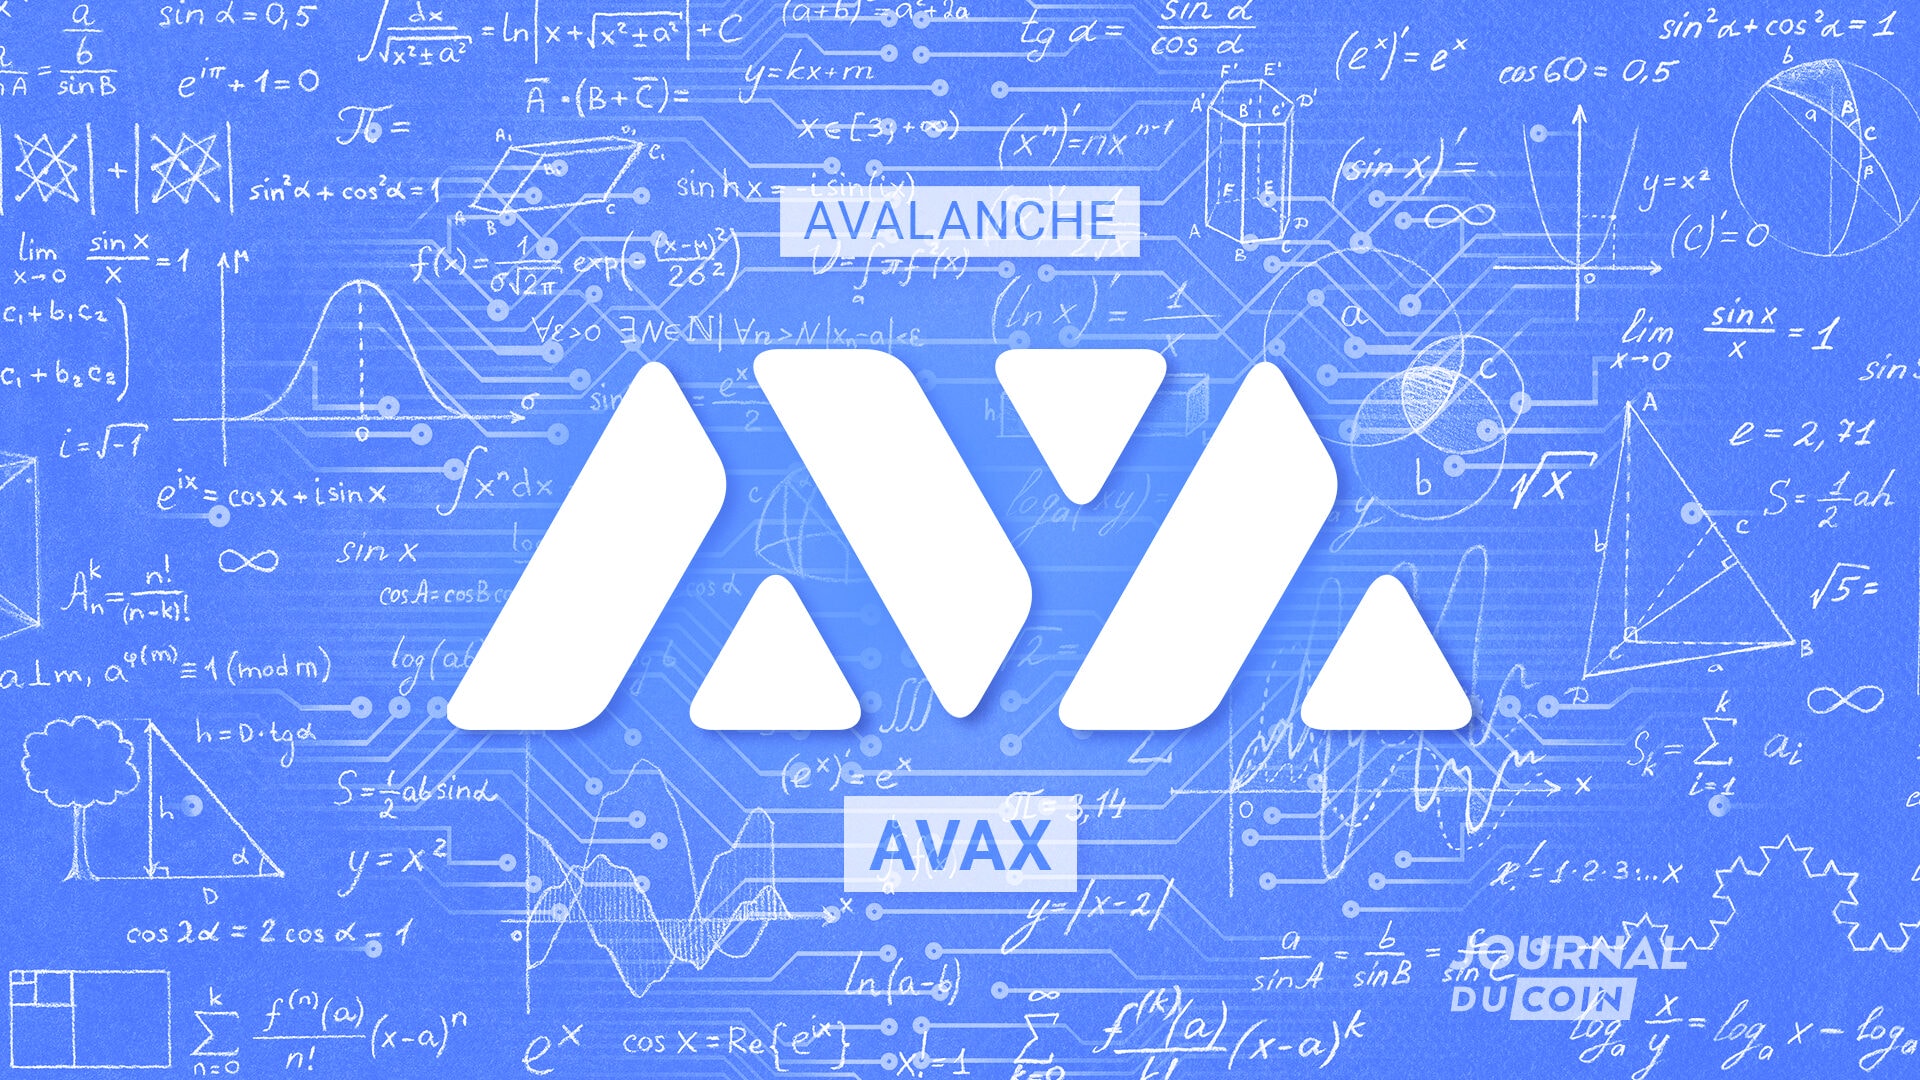 Avalanche AVAX Ava Labs